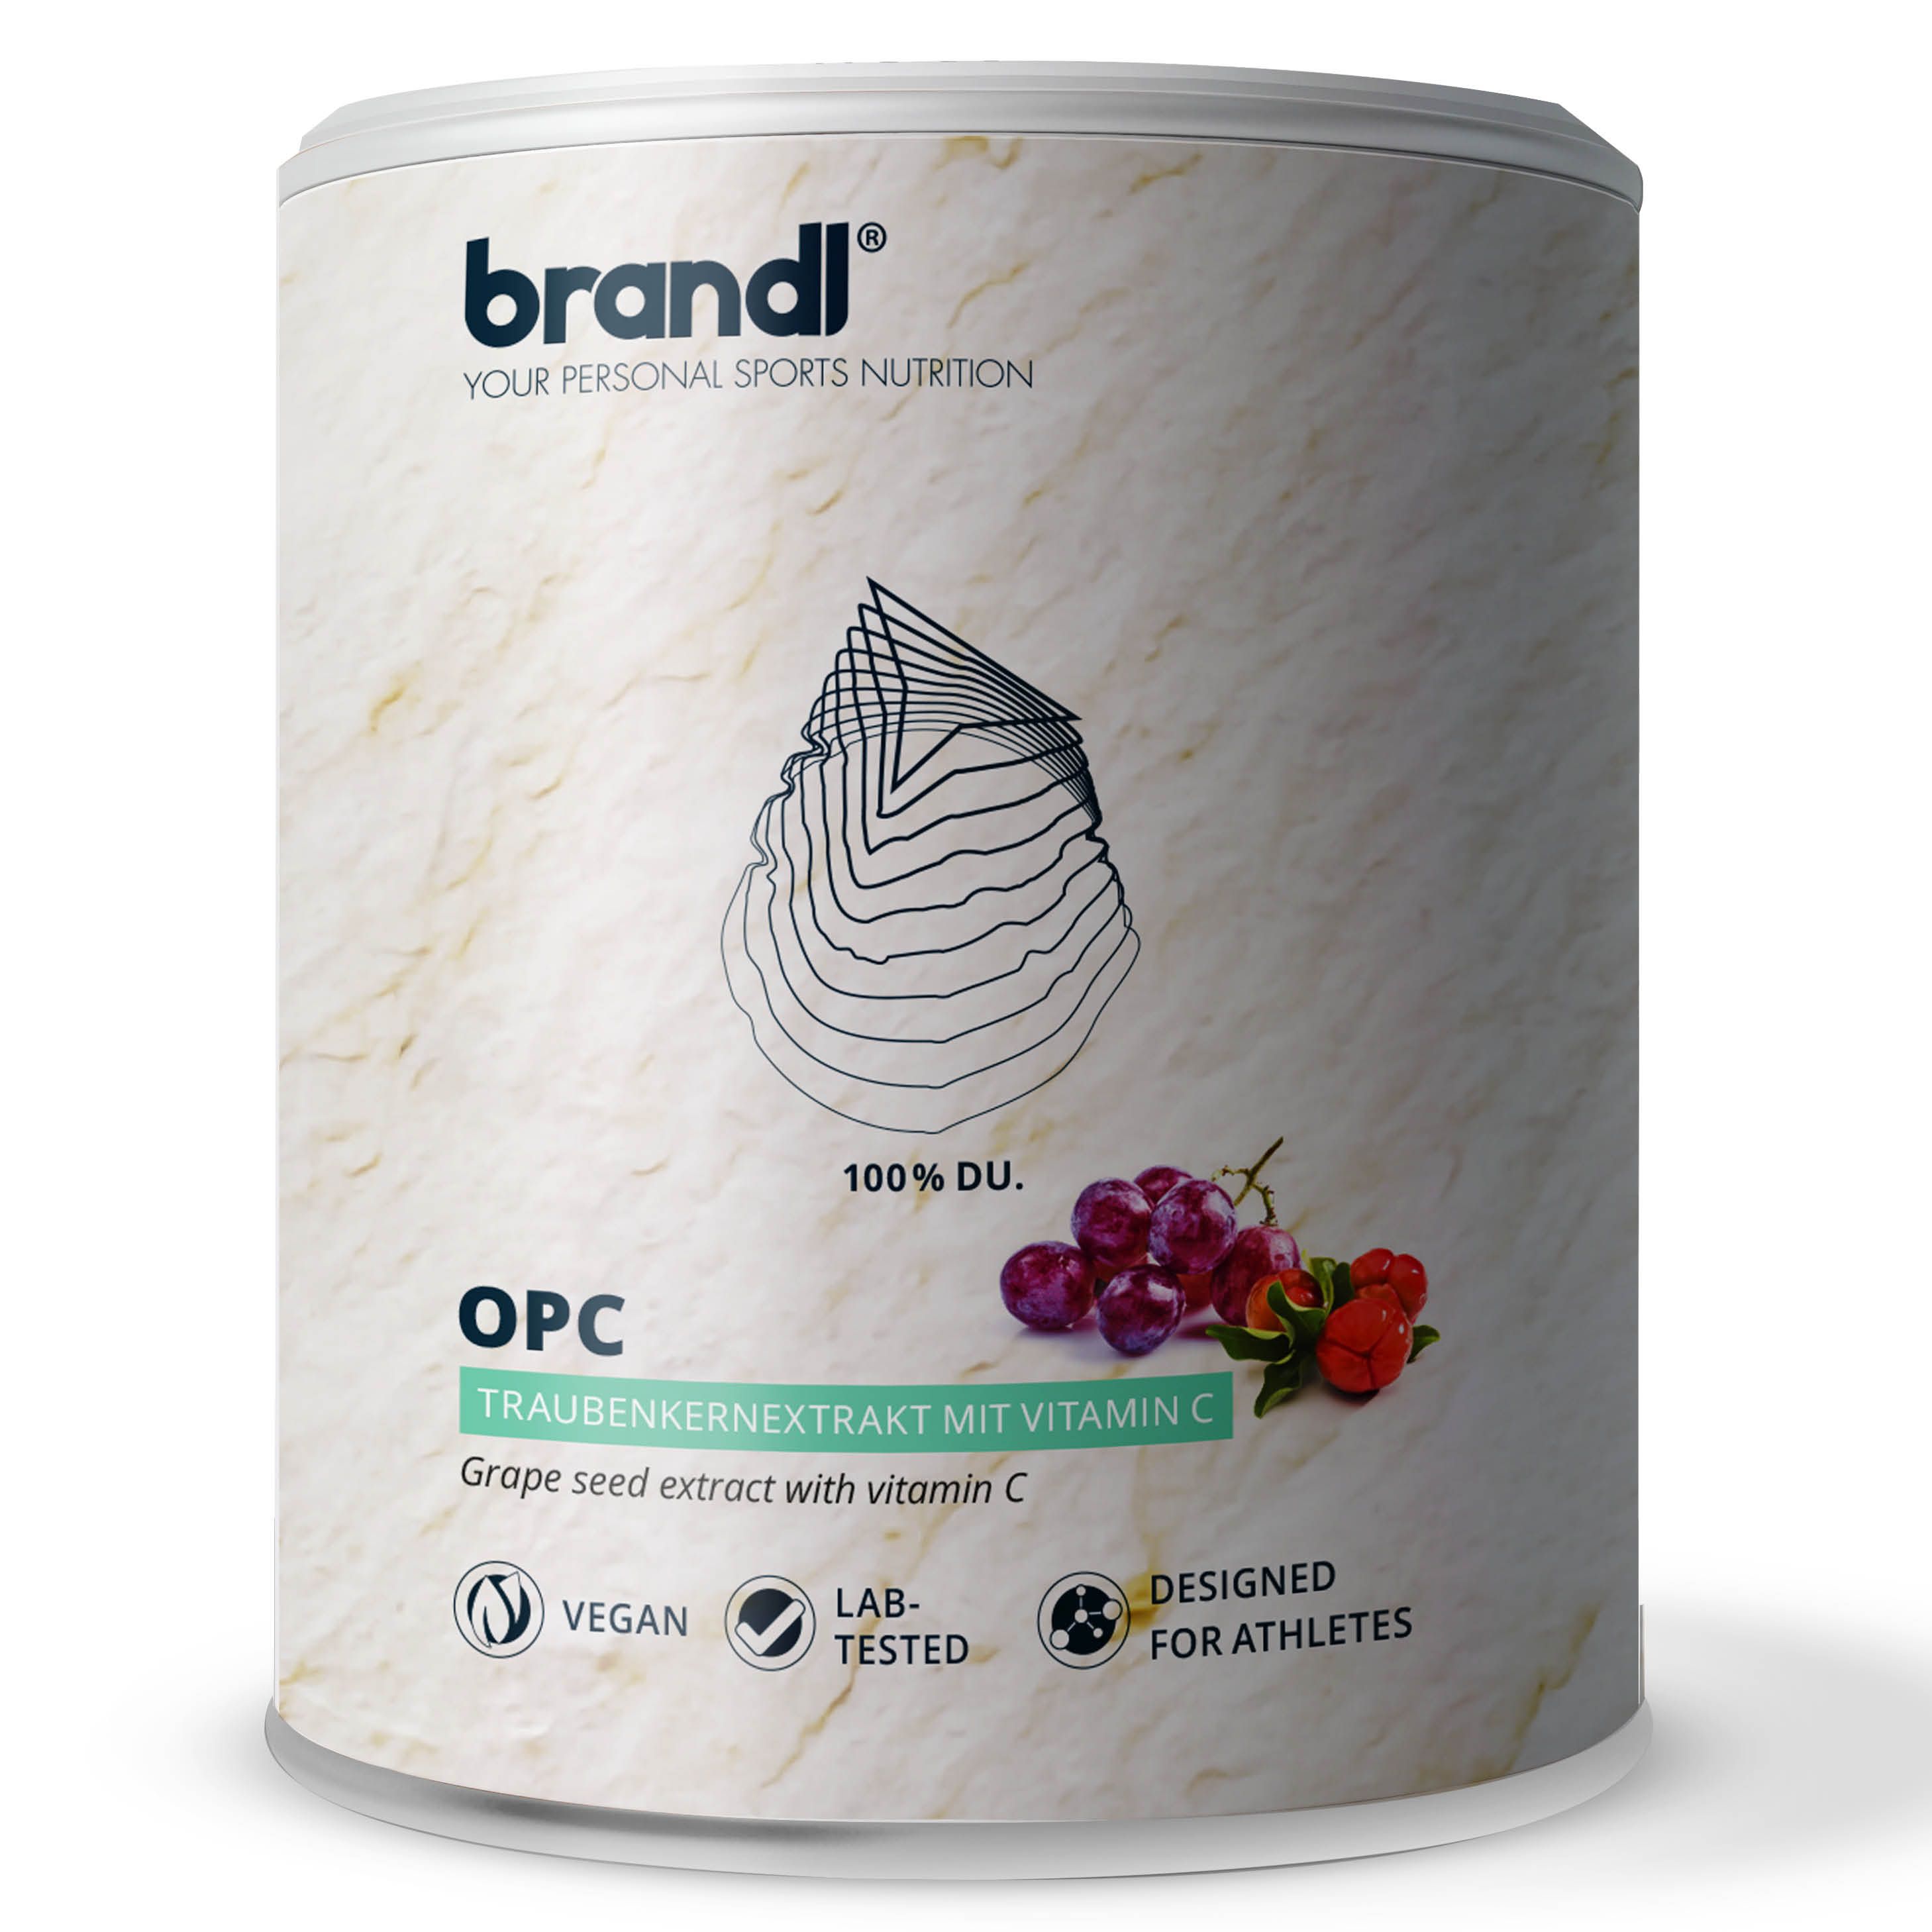 brandl® OPC Traubenkernextrakt mit Vitamin C aus Acerola